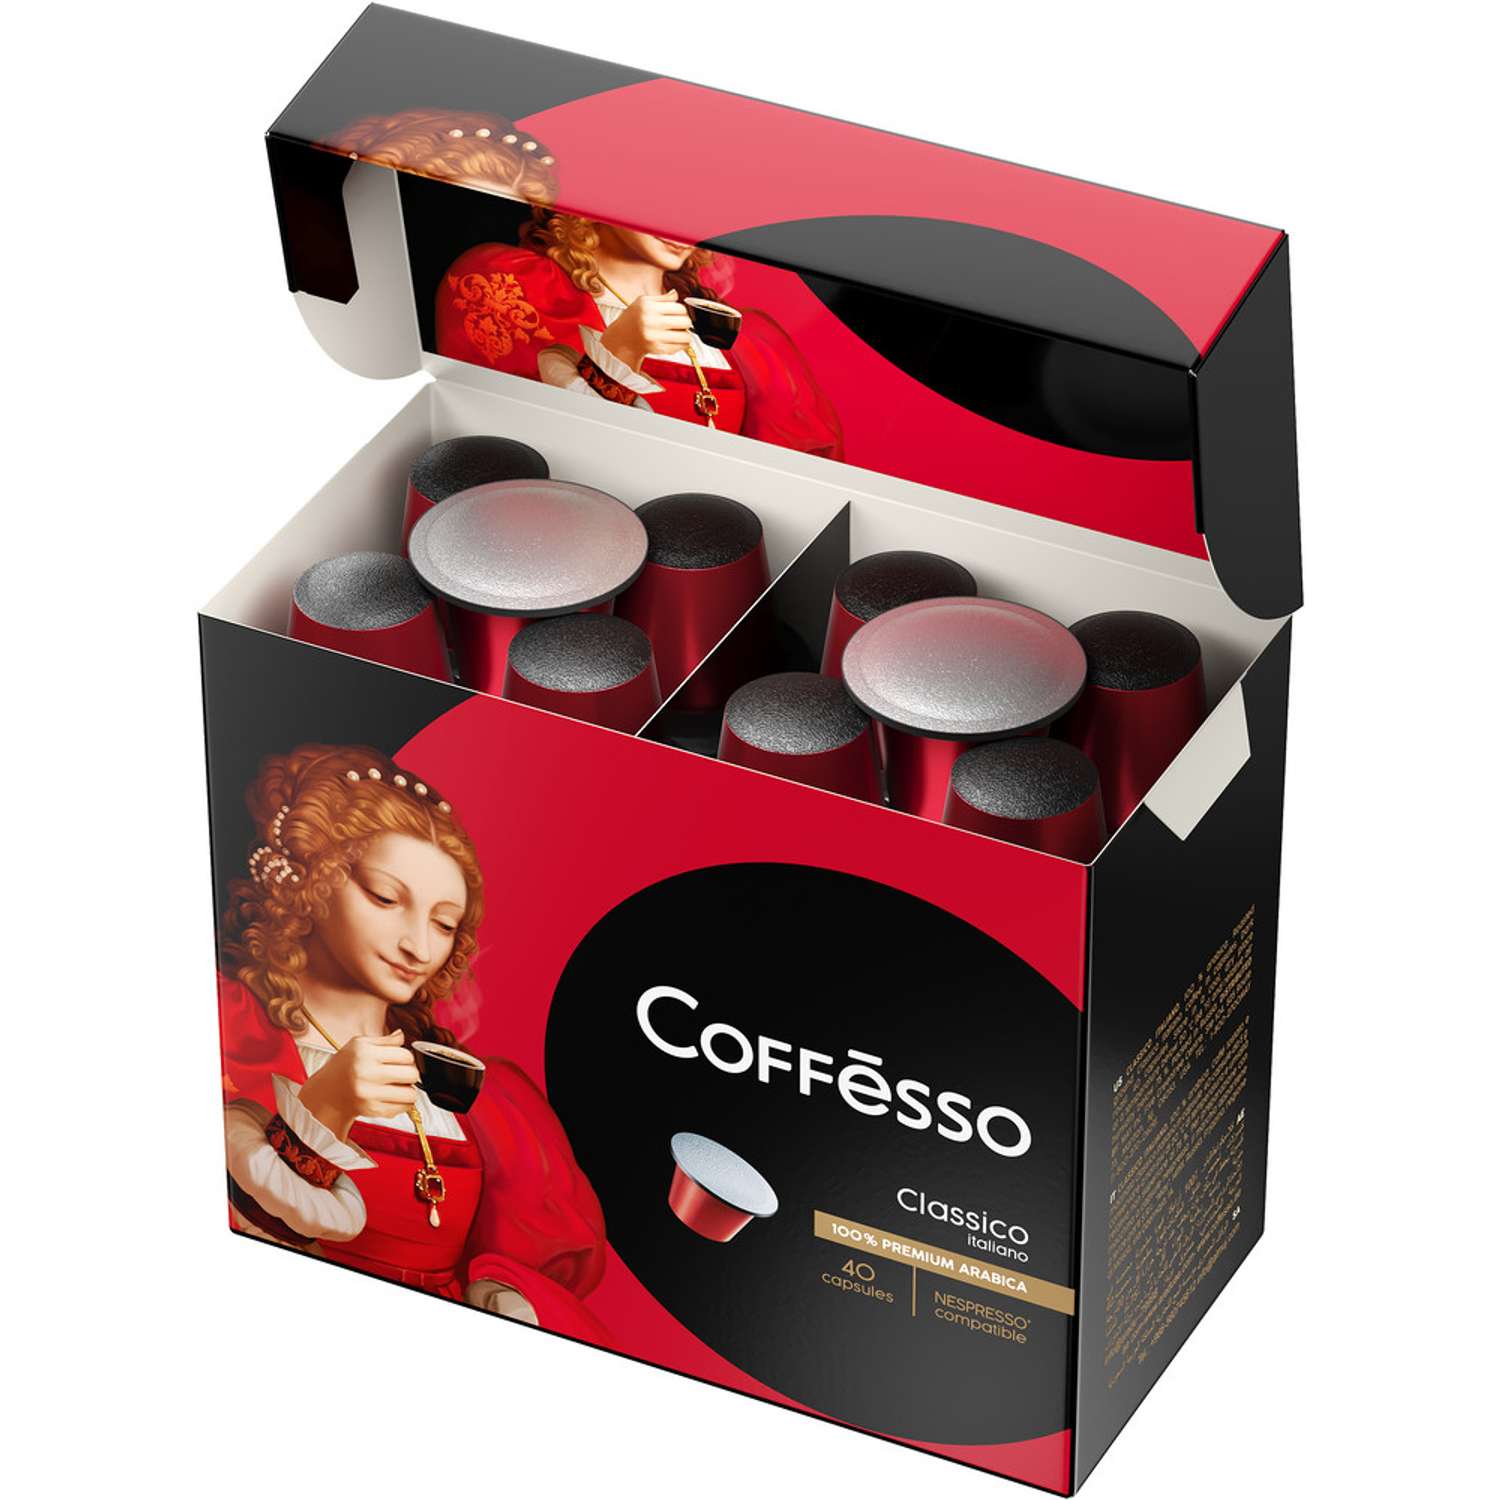 Кофе в капсулах Coffesso Classico Italiano 40 капсул по 5 г - фото 4